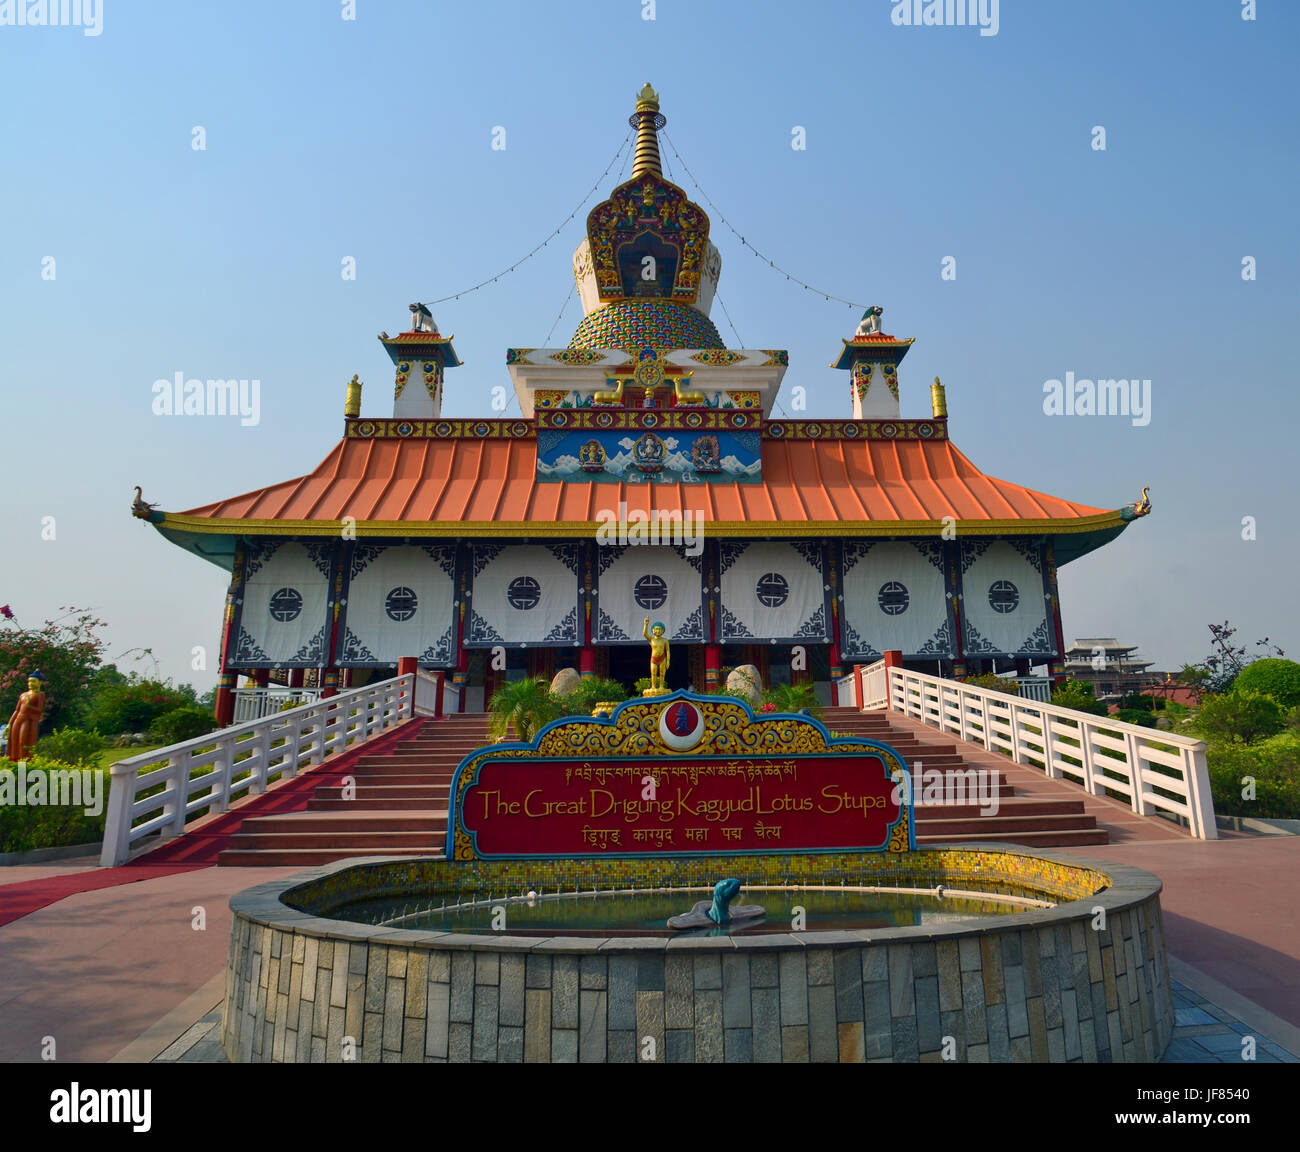 Great Drigung Kagyud Lotus Stupa in Lumbini, Nepal - birthplace of Buddha Stock Photo